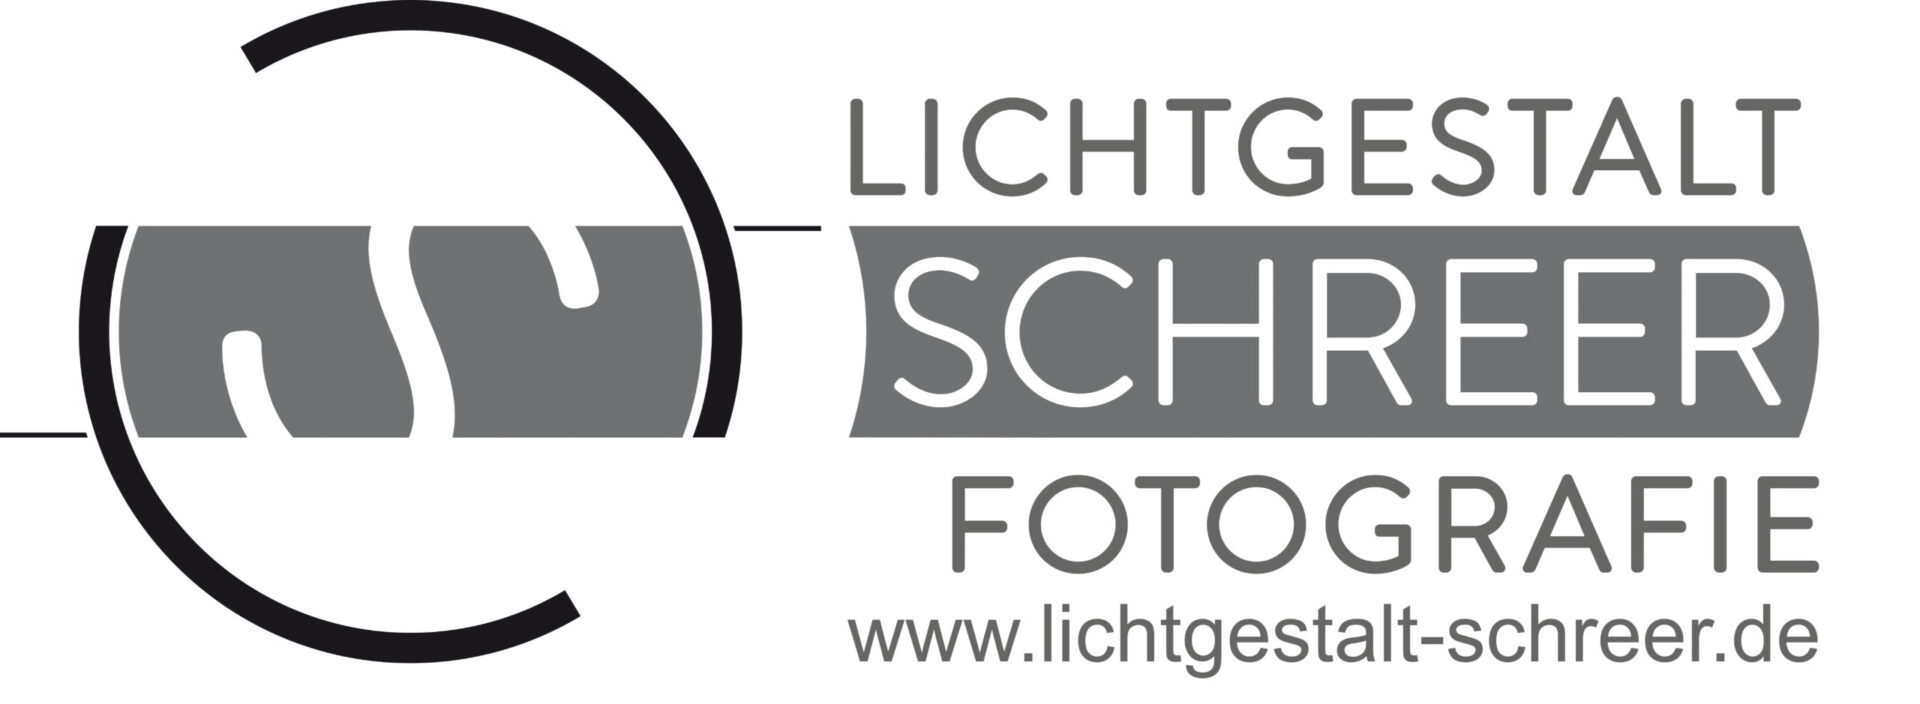 Logo Lichtgestalt Schreer Fotografie